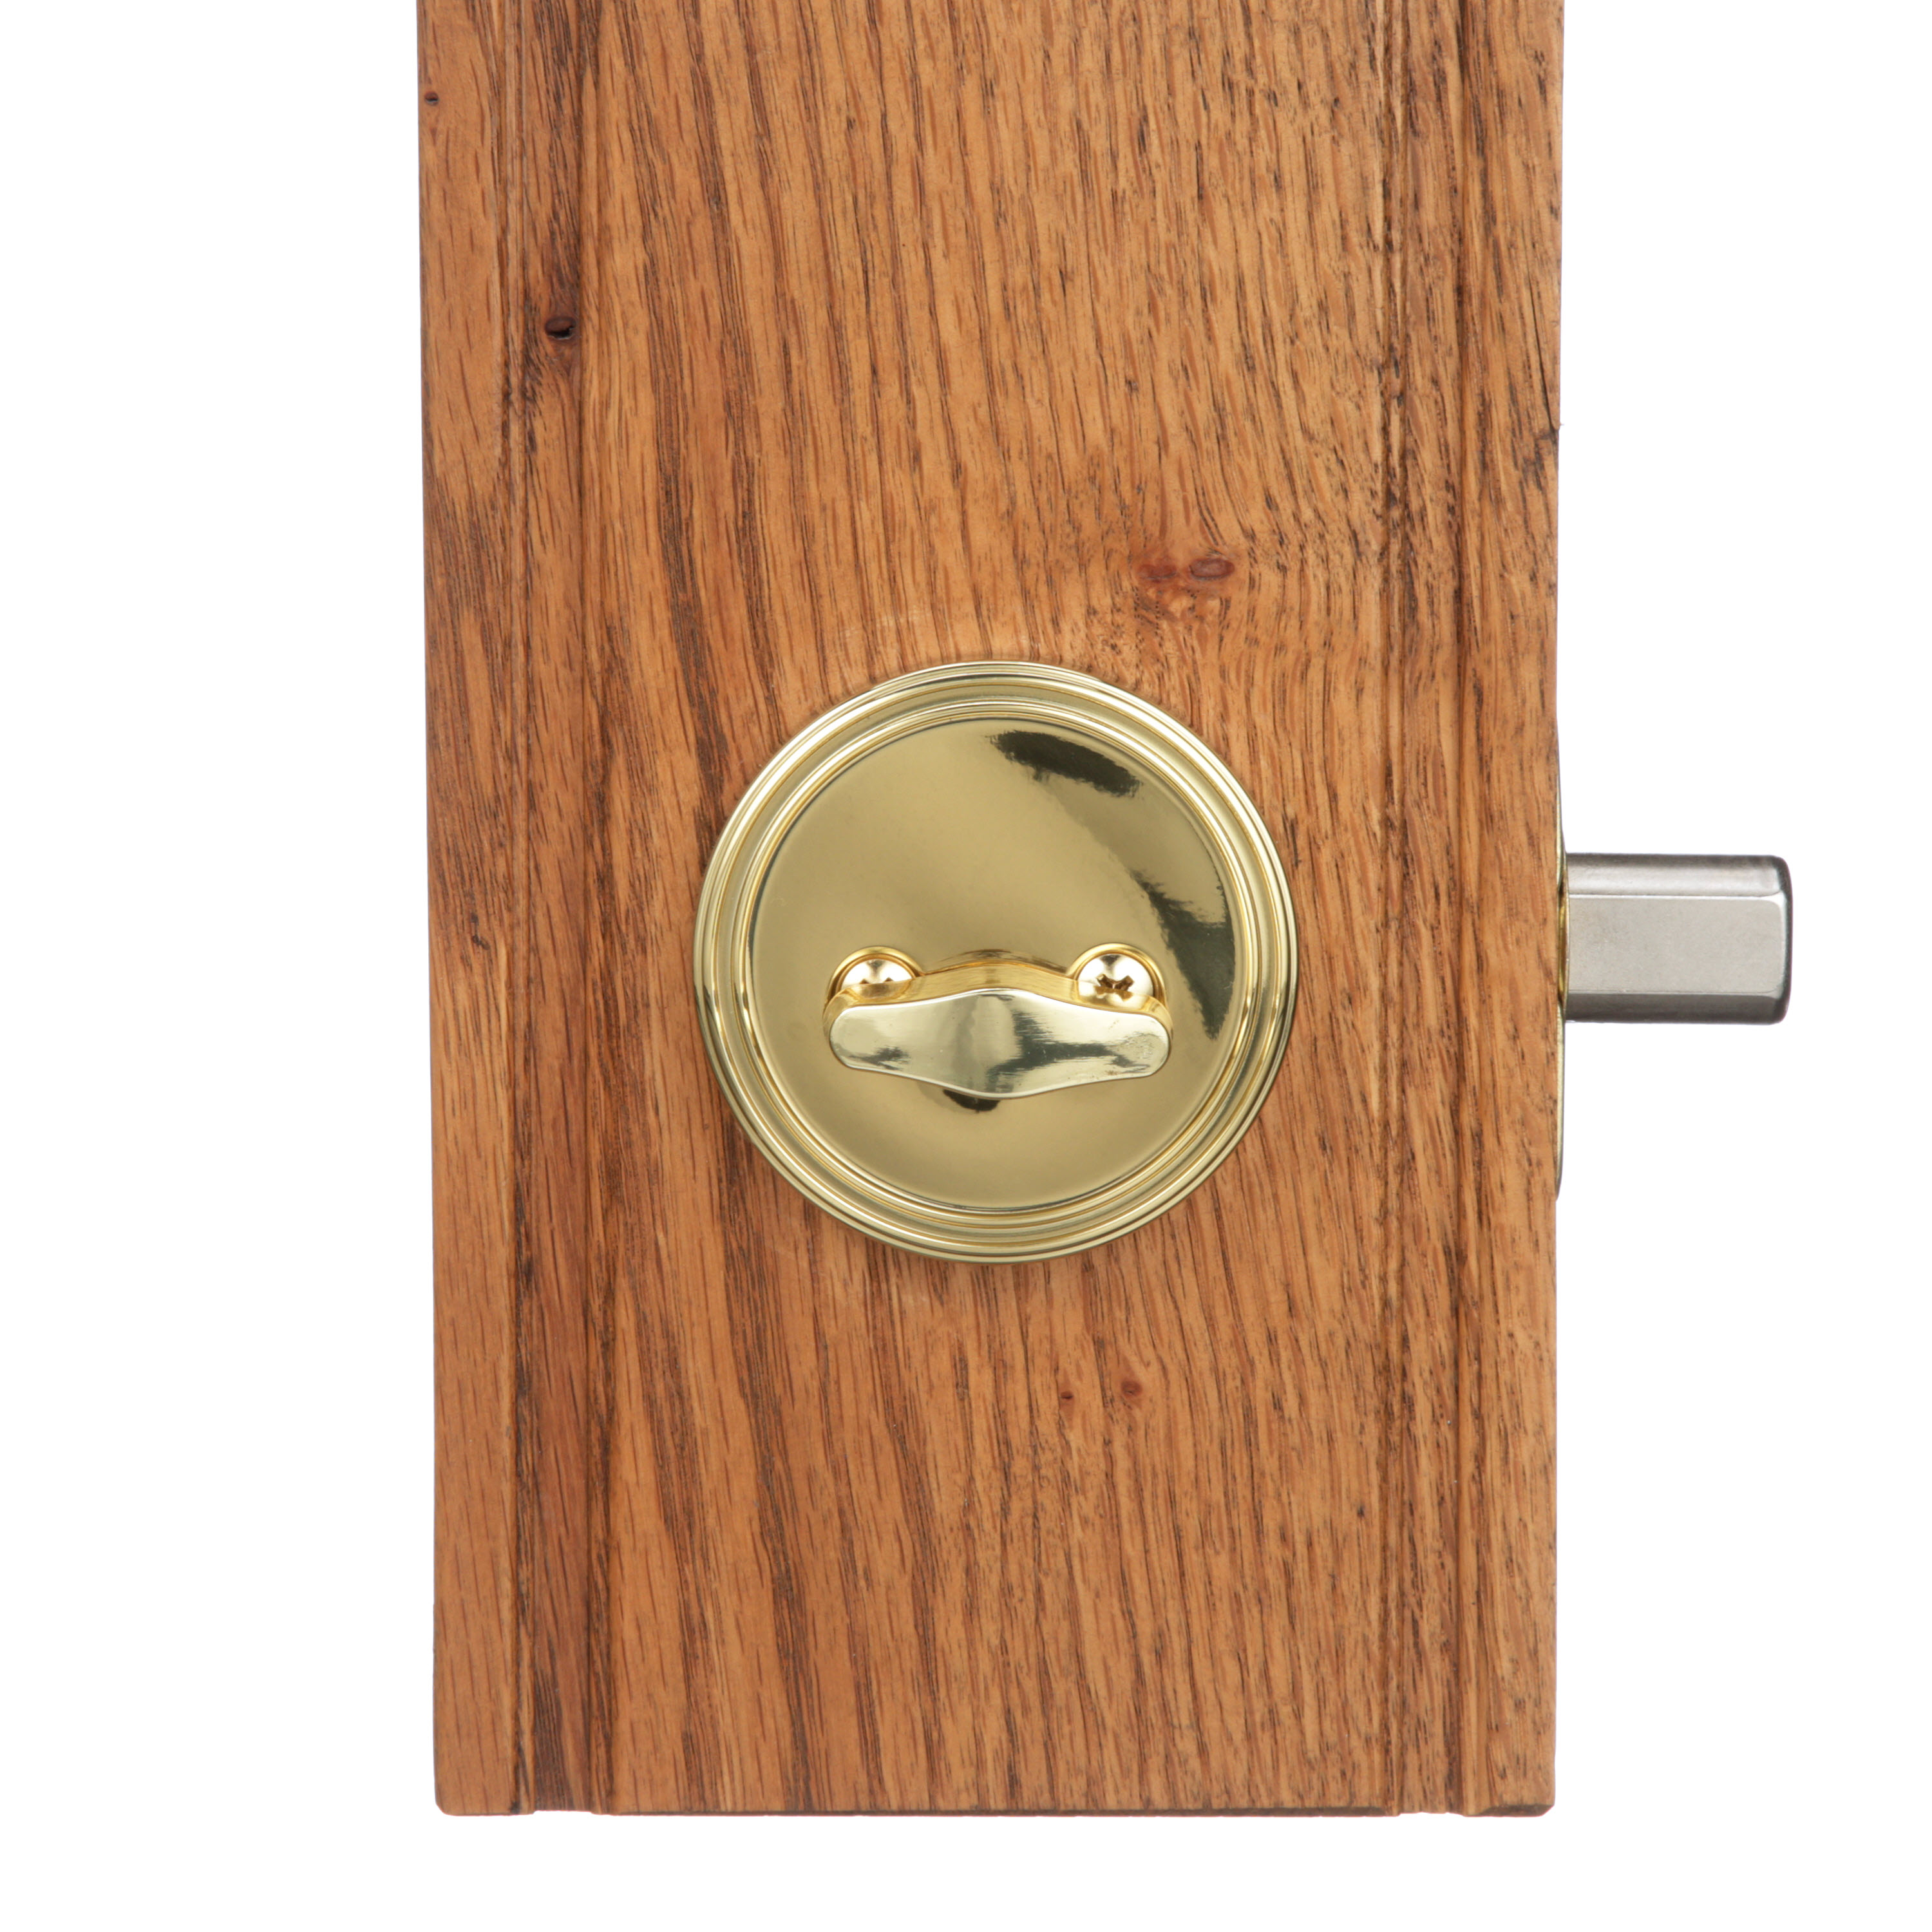 Brinks, Keyed Entry Mobile Home Single Cylinder Deadbolt, Polished Brass Finish - image 5 of 9